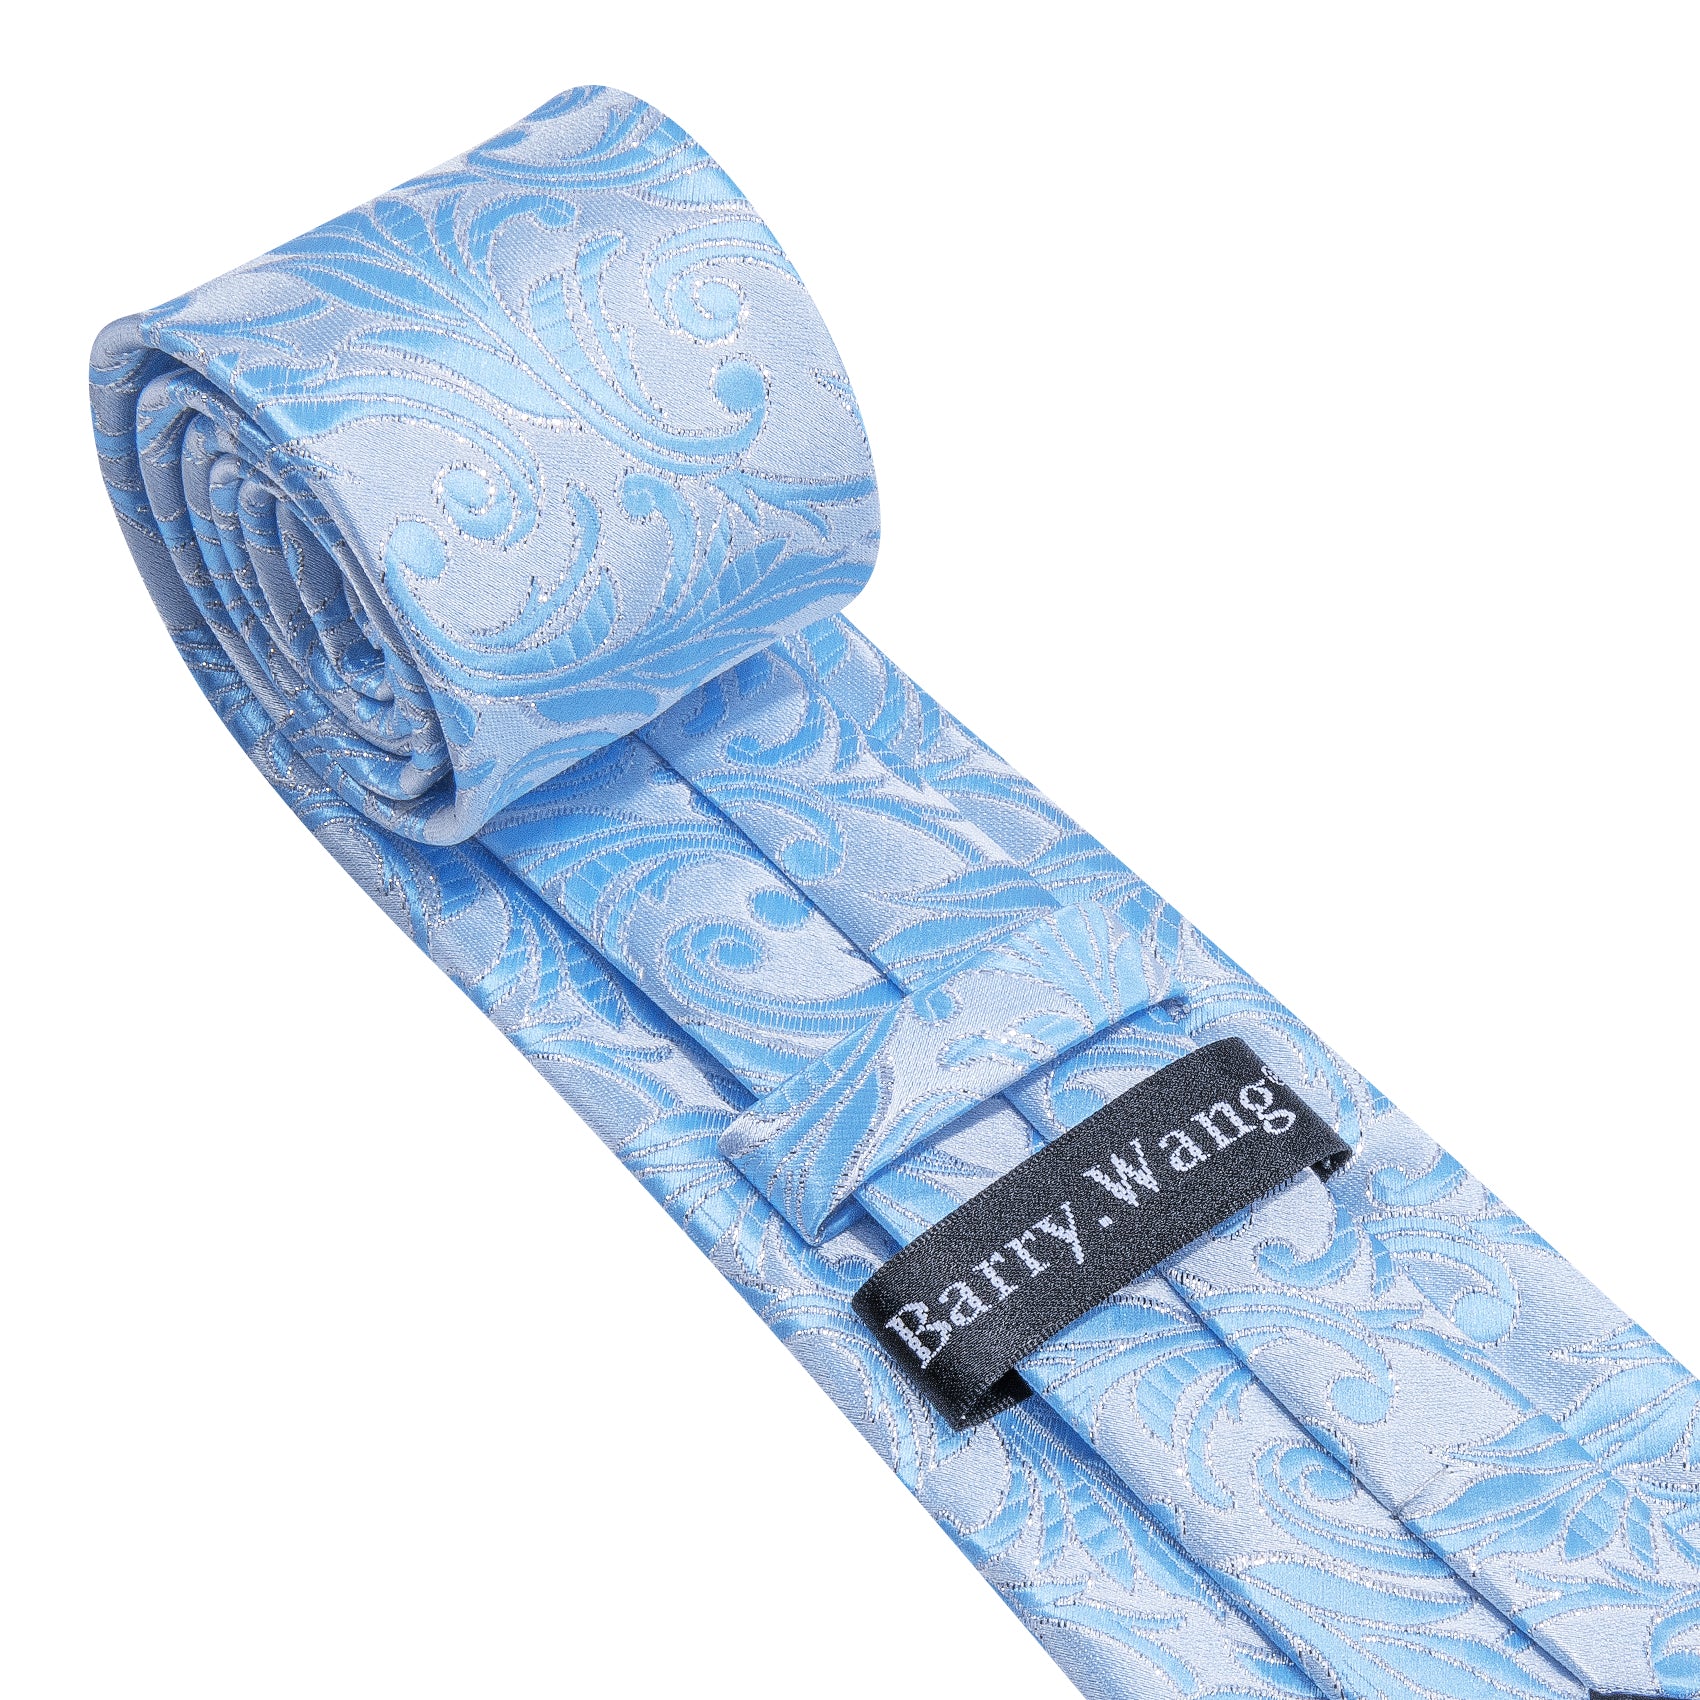 Cyan Silver Floral Silk Tie Handkerchief Cufflinks Set